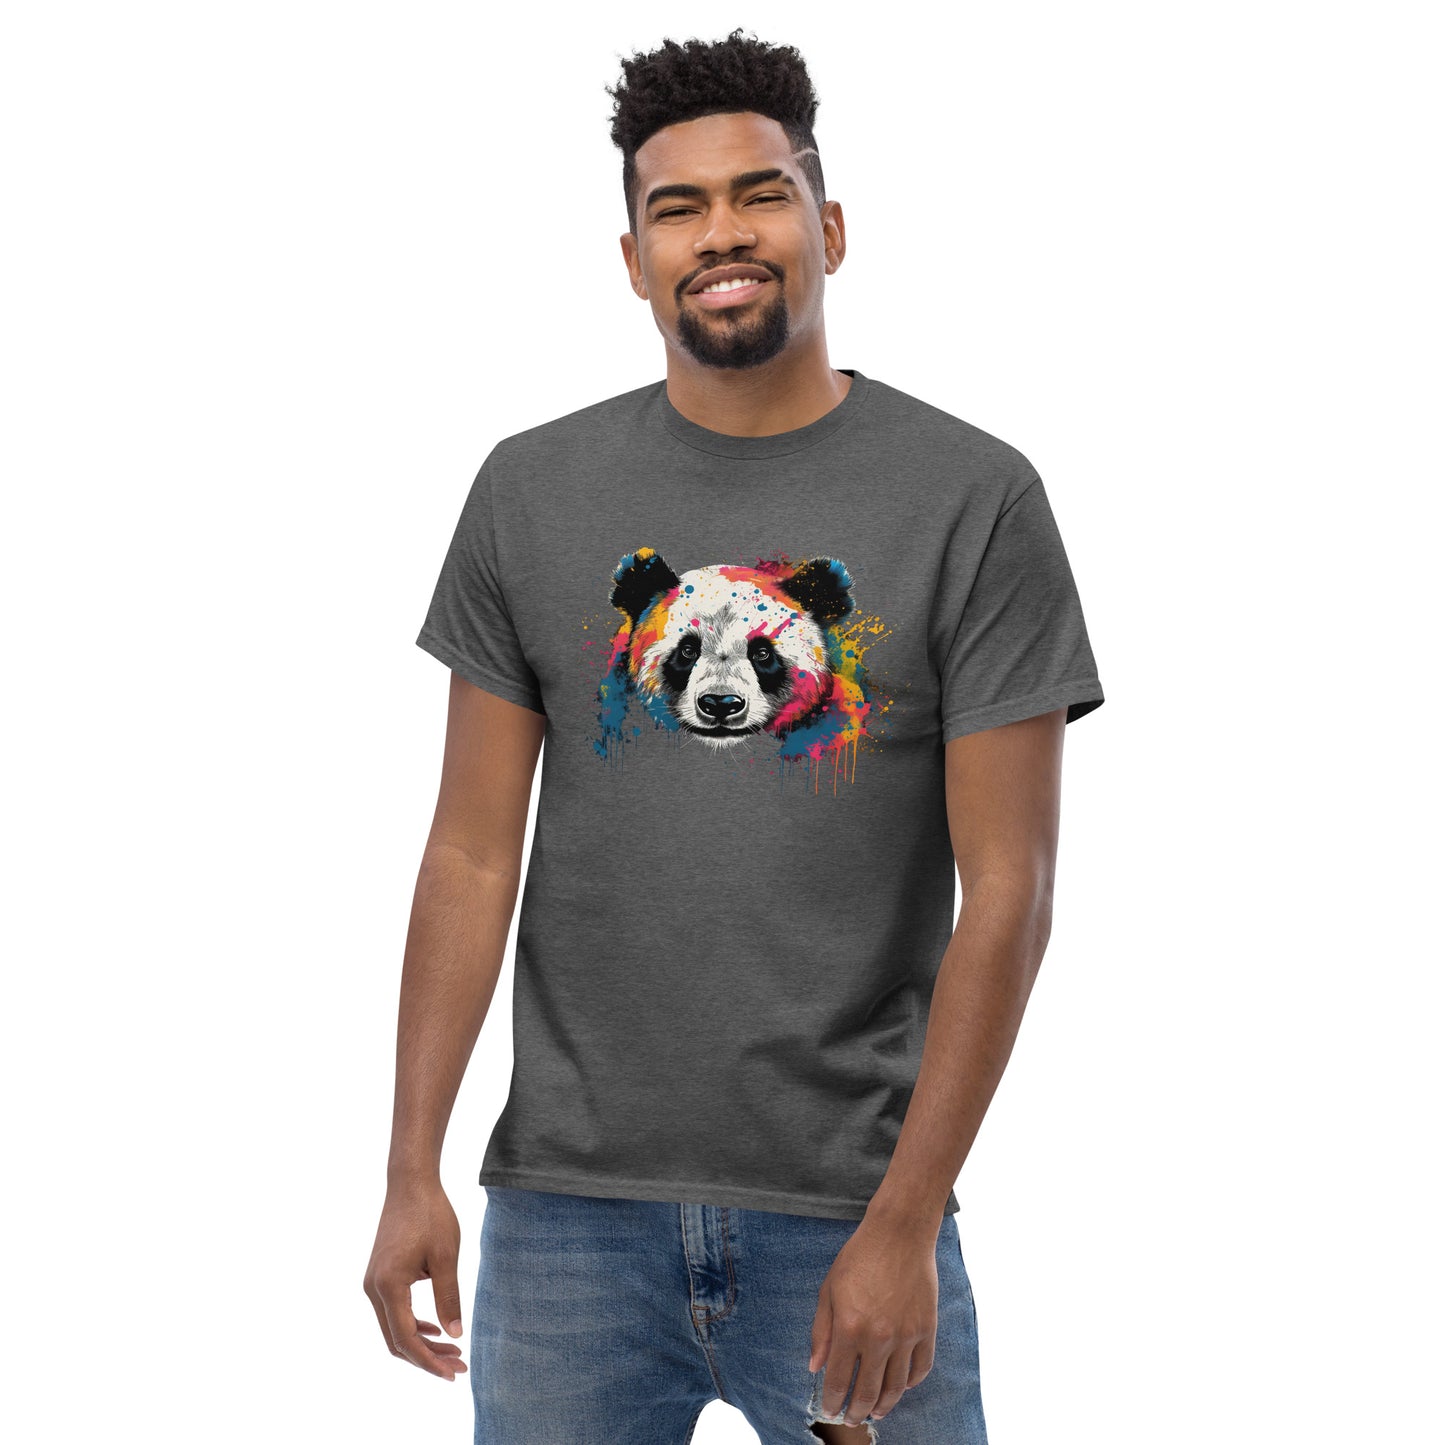 Panda Bear Pride men's classic tee